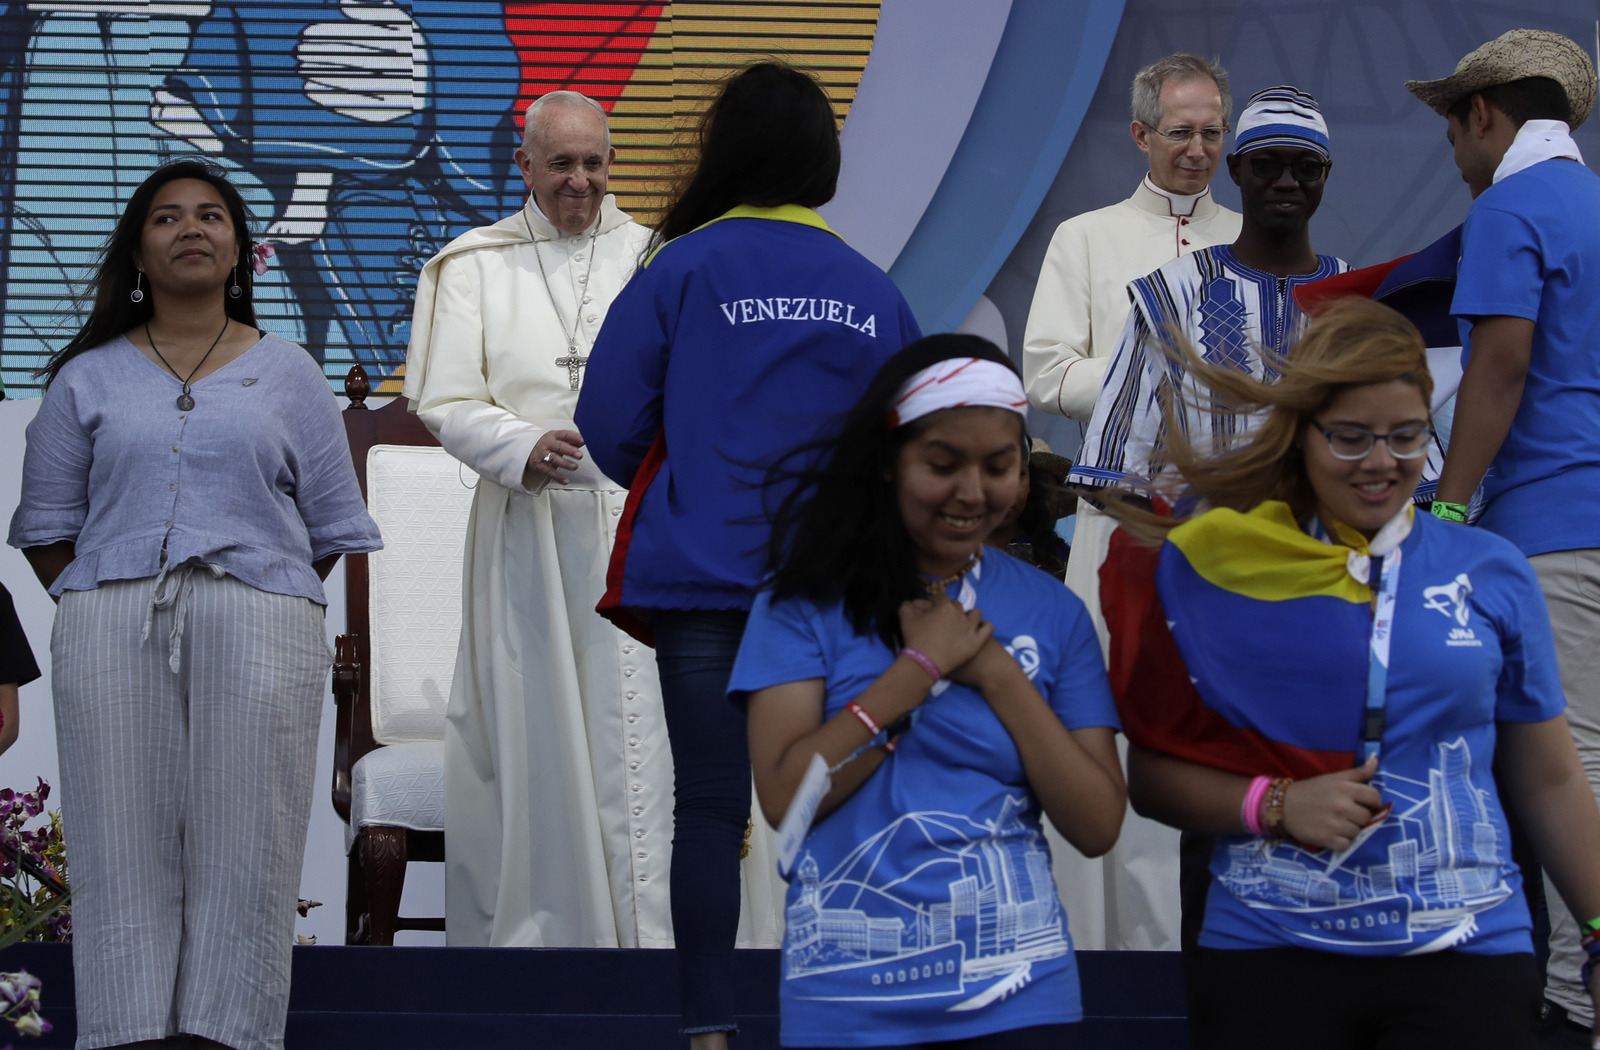 Apoyo. El portavoz del Vaticano se limitó a decir que Francisco 'sigue con cercanía el desarrollo en Venezuela'. (AP)